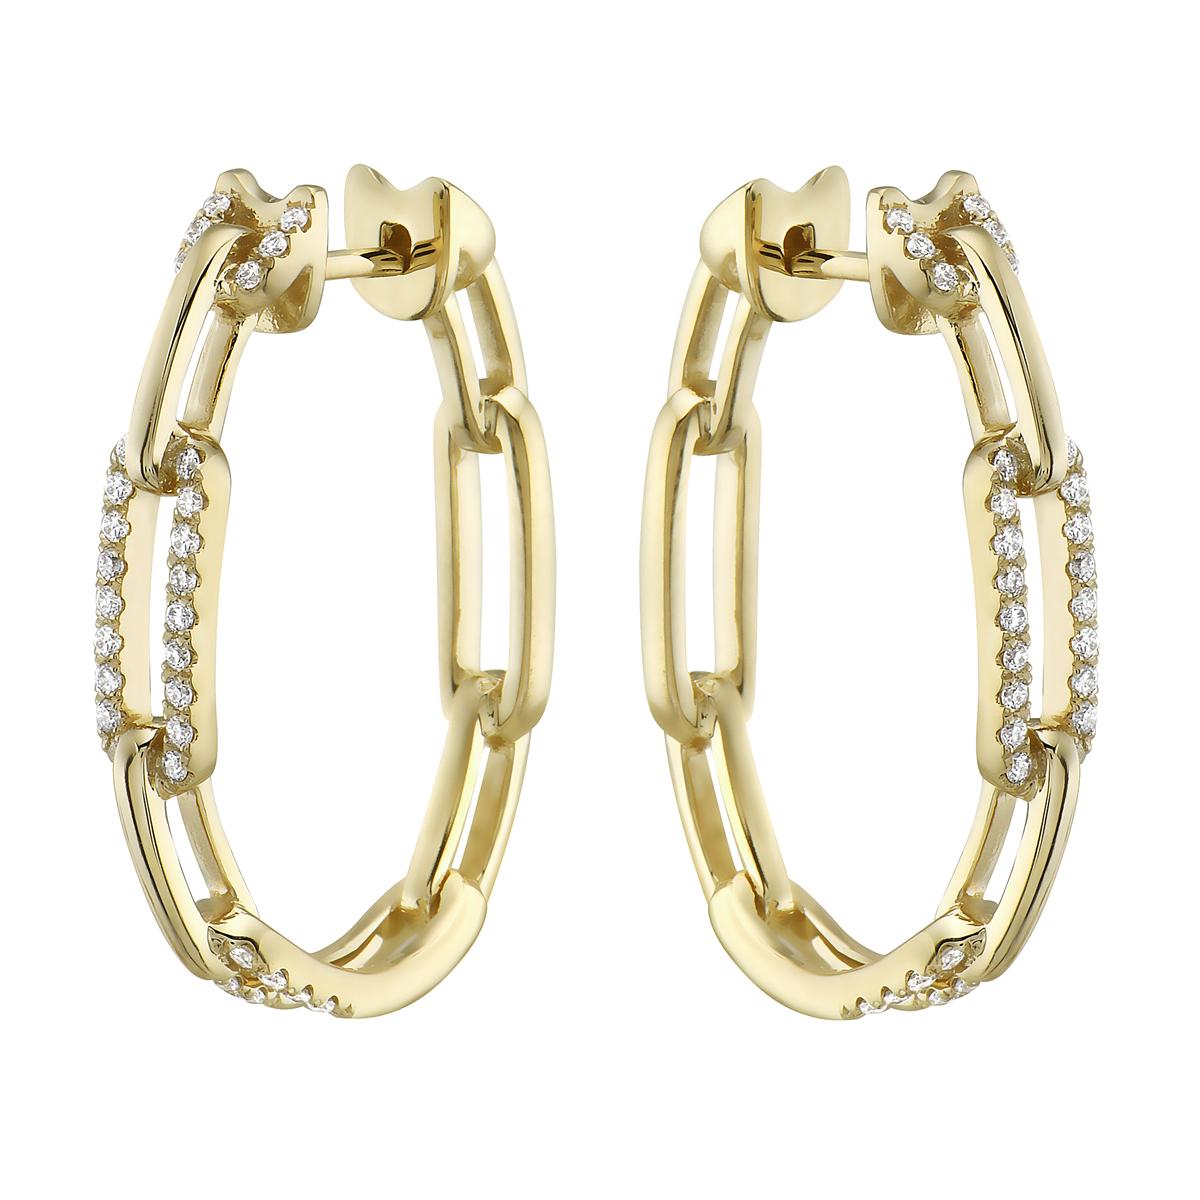 Mit diesen exquisiten Reif-Ohrringen aus Gelbgold stehen Stil und Glamour im Rampenlicht. Diese Reifchen sind in 14-karätigem Gold gefasst und bestehen aus 5,9 Gramm Gold. Die Farbe der Diamanten ist GH. Die Klarheit ist SI1-OSI2. Diese Ohrringe